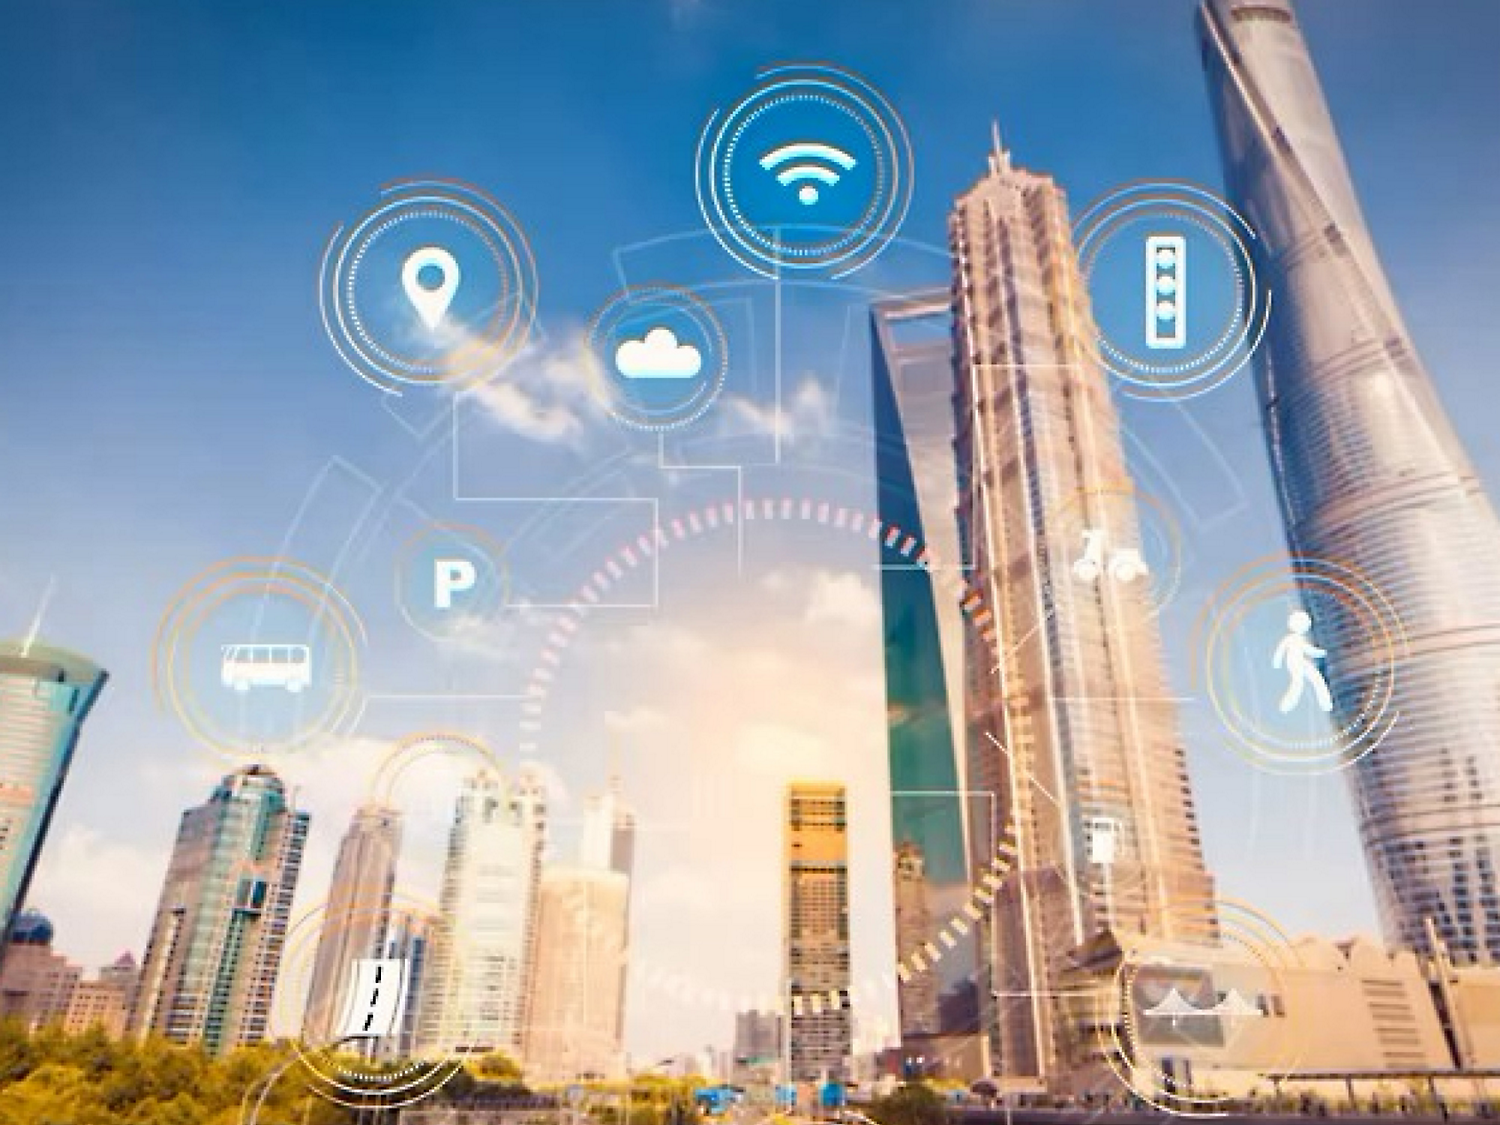 Ilustración de una ciudad inteligente con iconos digitales que representan la red Wi-Fi, la informática en la nube y otras tecnologías con rascacielos.